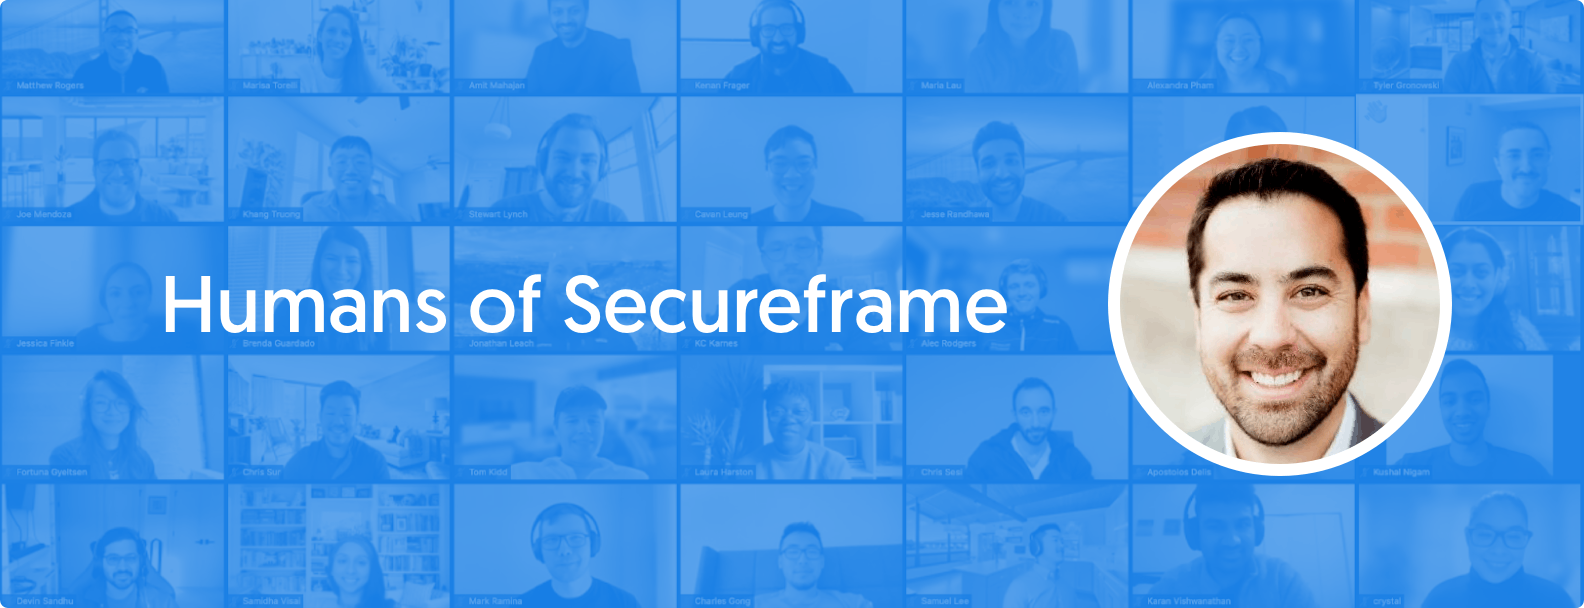 Humans of Secureframe: VP of Sales Evan Horibe on His Philosophy of Servant Leadership